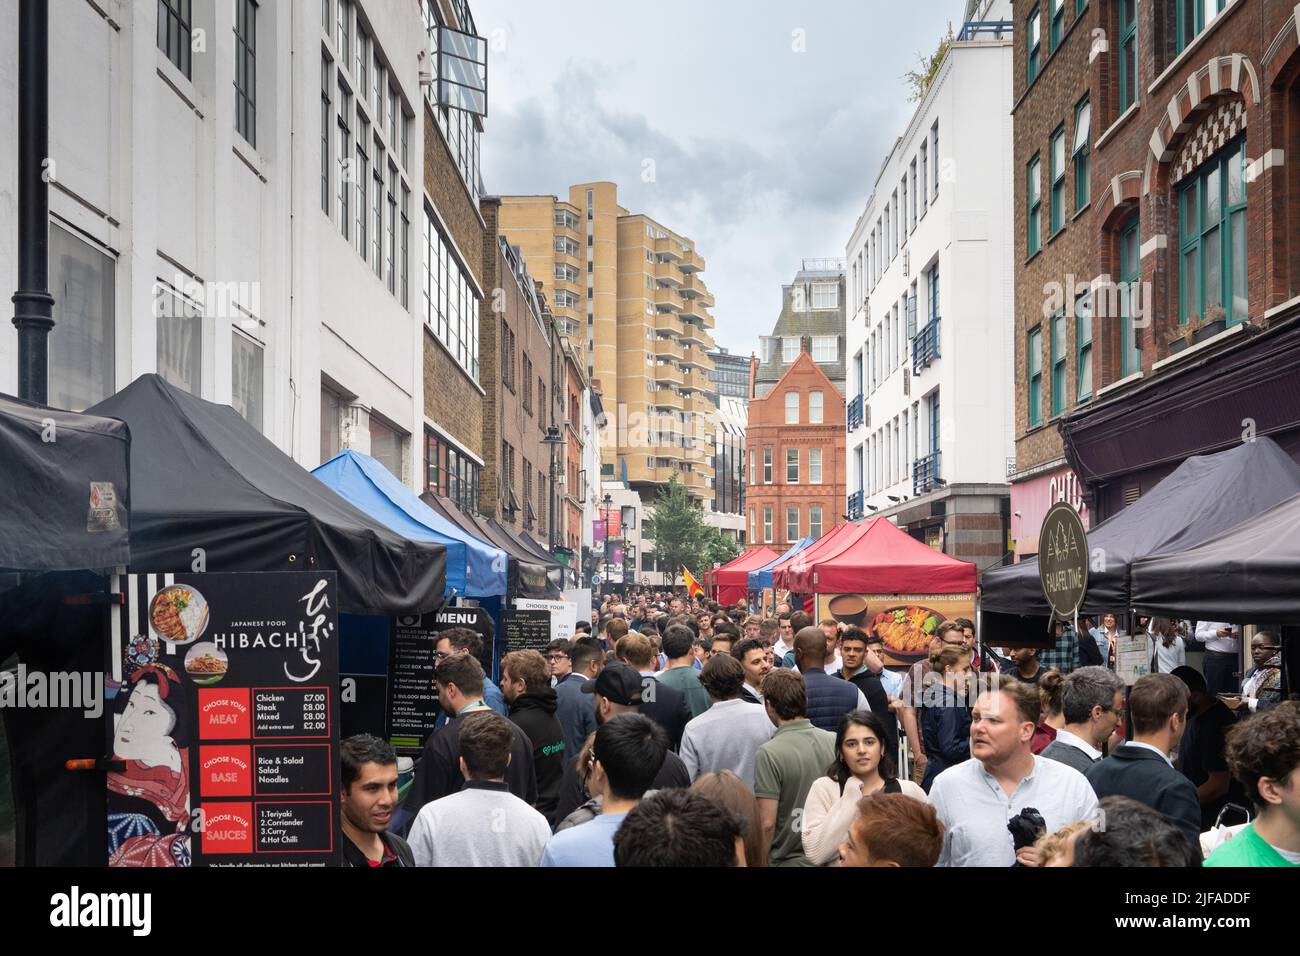 Le marché de la rue en cuir est un marché extérieur situé dans la région de Holborn, dans le quartier de Camden, à Londres. C'est le plus ancien marché de rue de Camden Banque D'Images